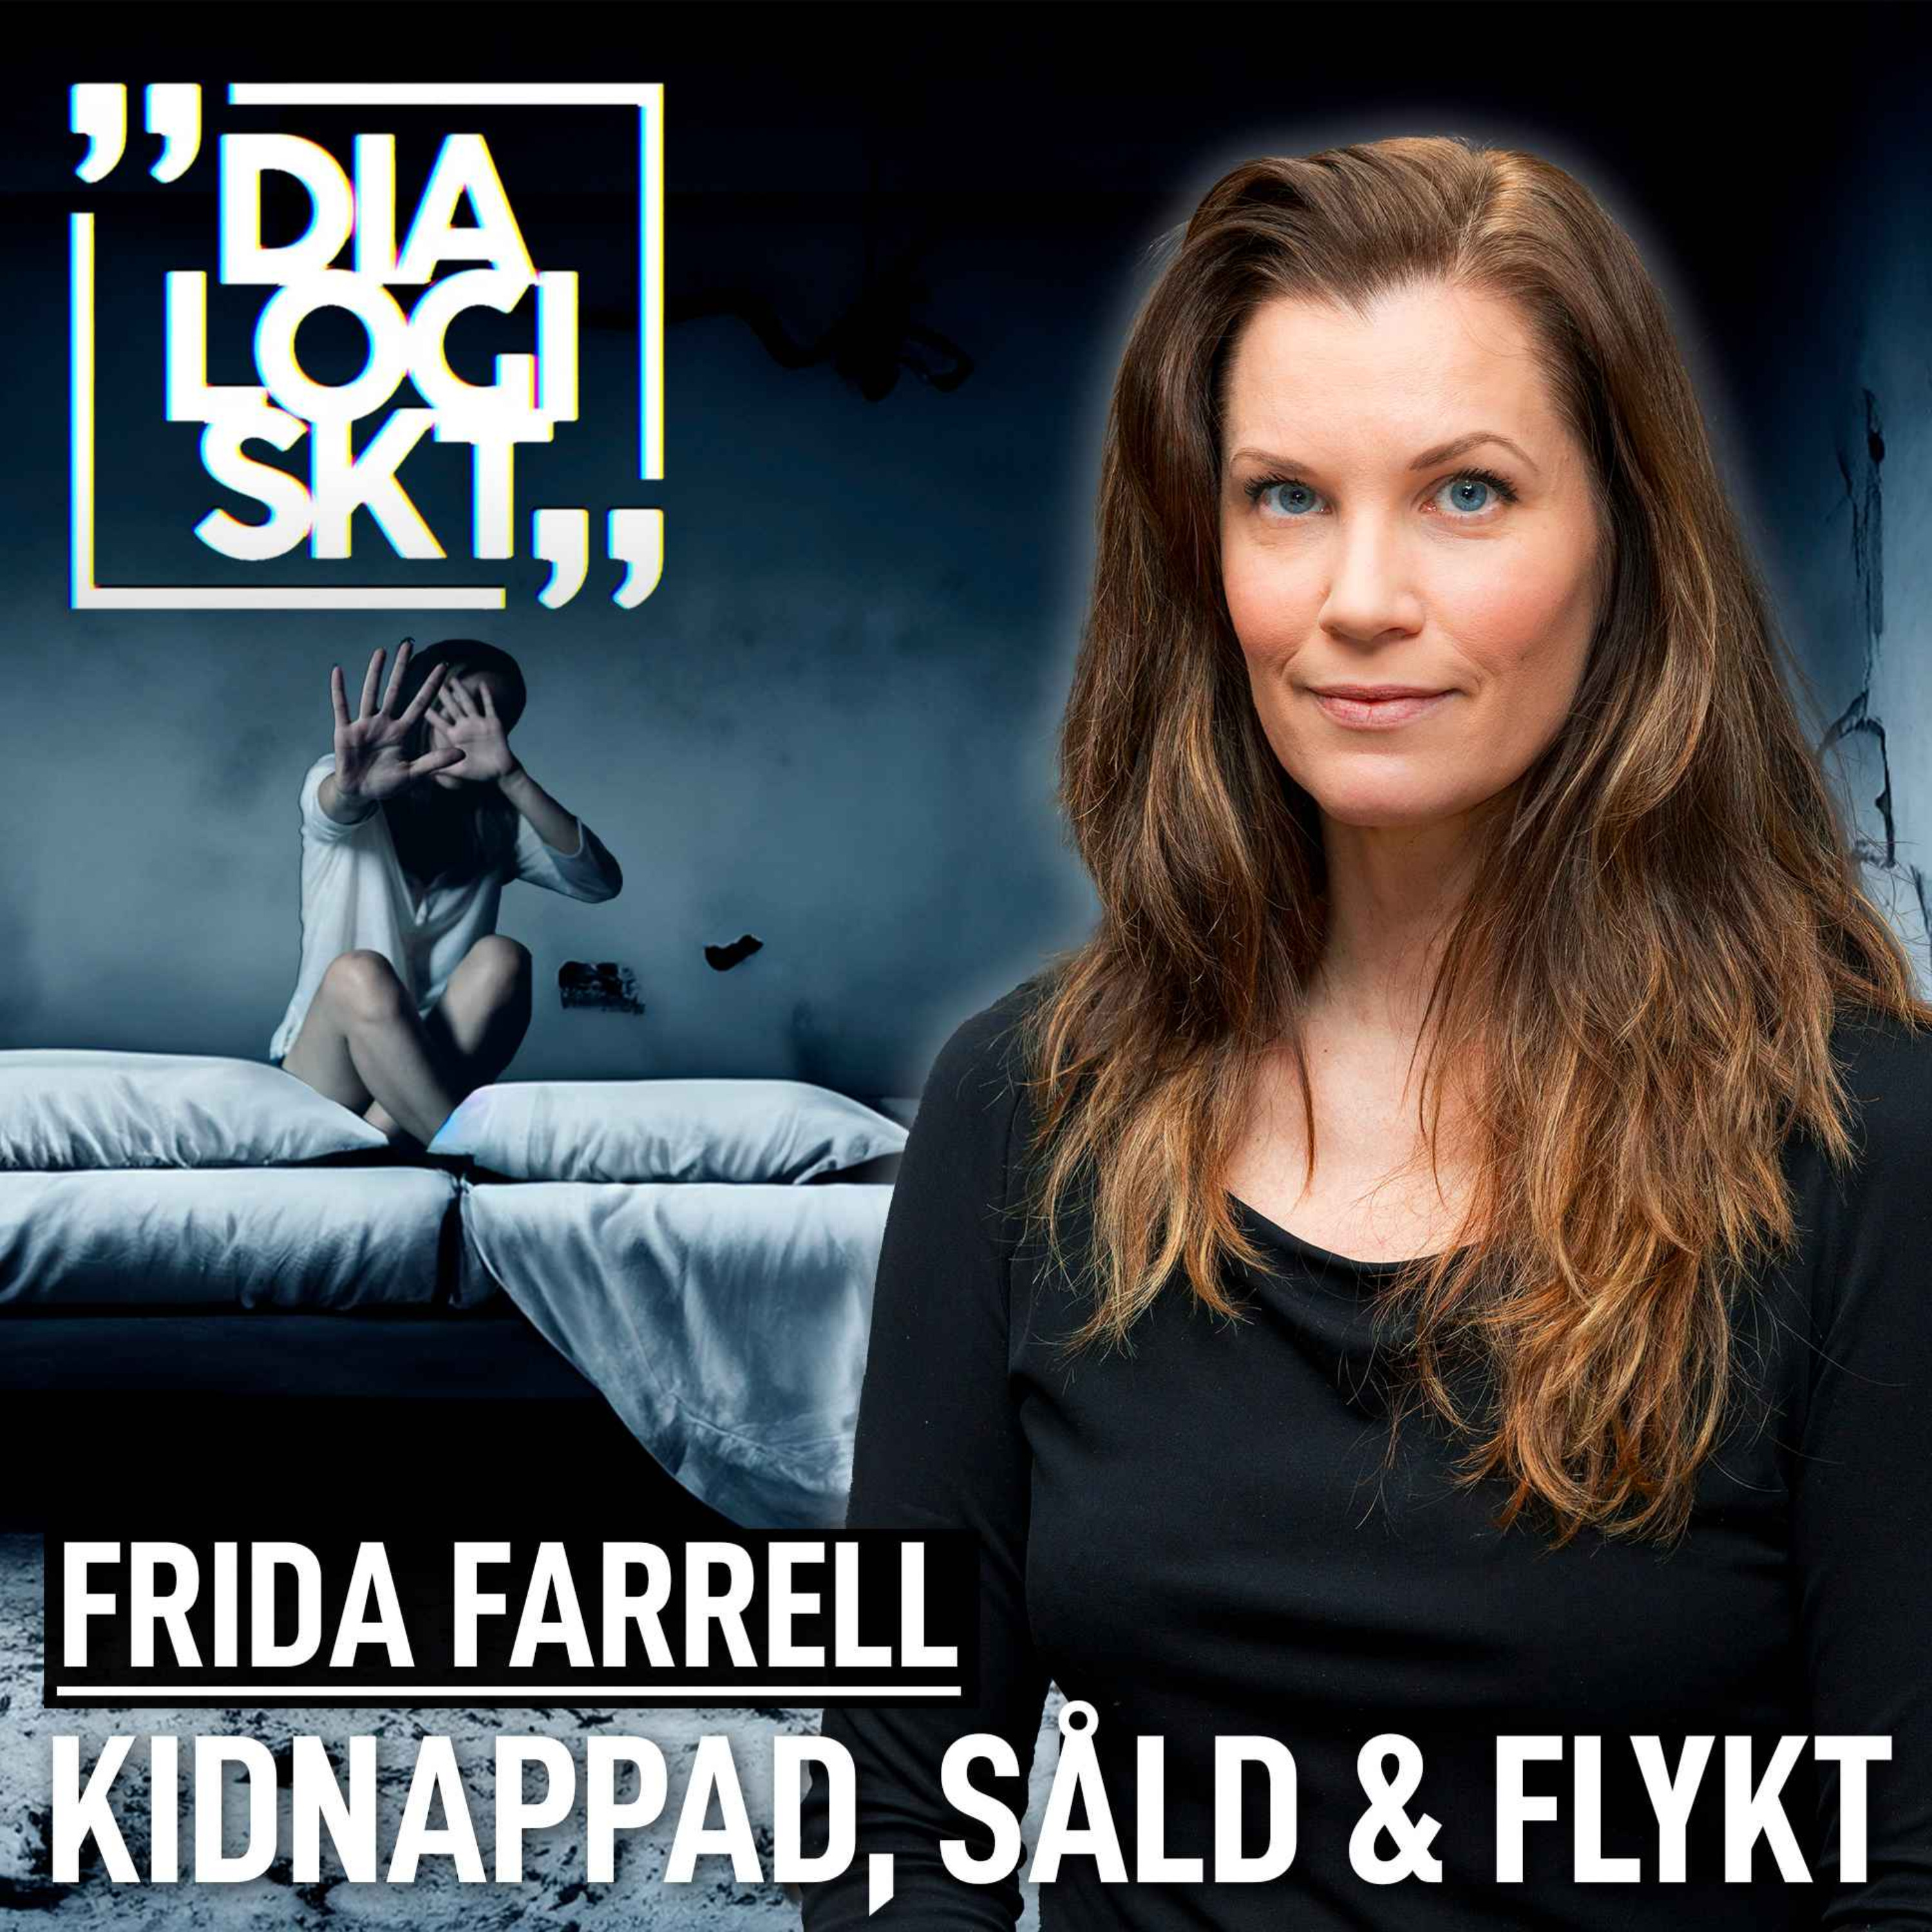 cover art for  Frida Farrell,#174, ”Jag blev inlåst & såld i 3 dagar” 